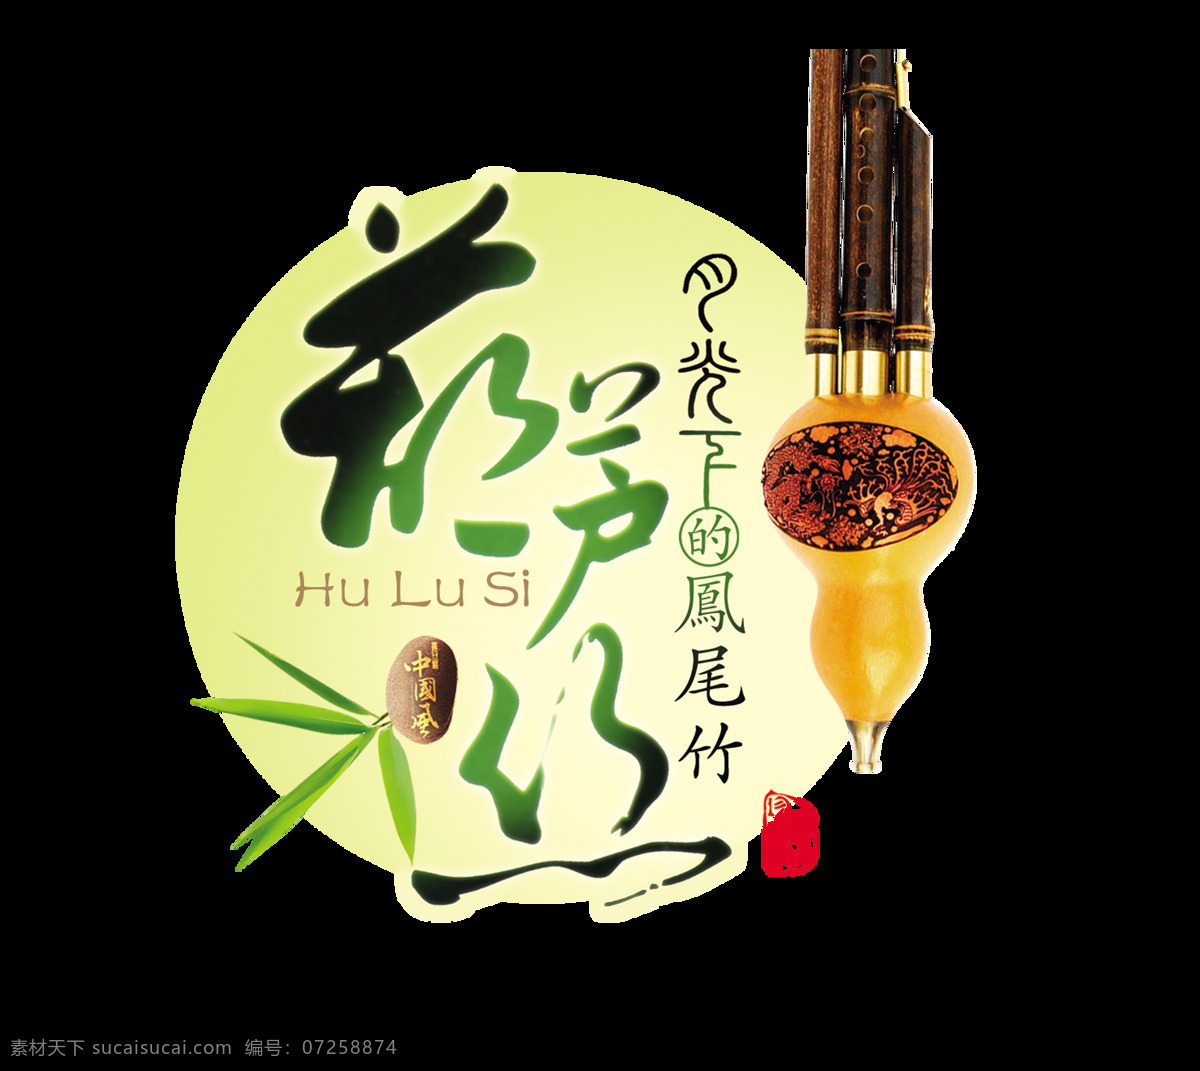 葫芦丝 传统 乐器 艺术 字 中国 风 民族风 中国风 古风 古典 宣传 传统乐器 艺术字 海报 推广